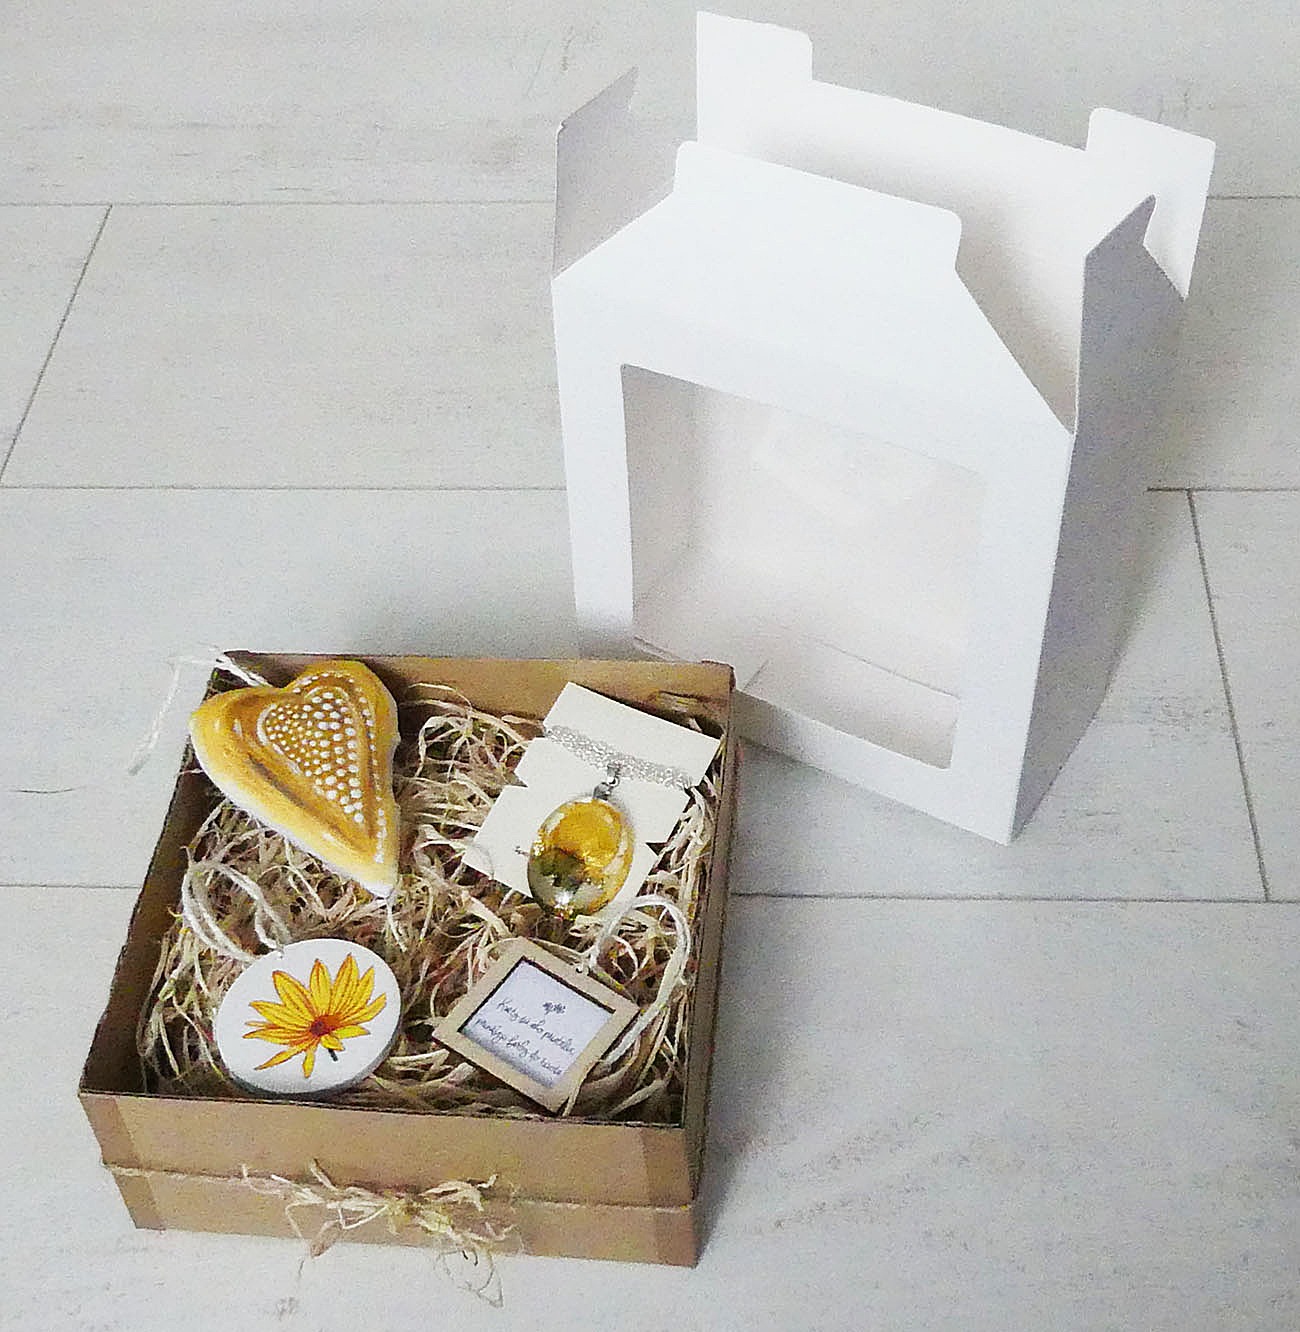 Žltý darčekový box s levanduľovým srdiečkom, príveskom, citátom a dekoráciou